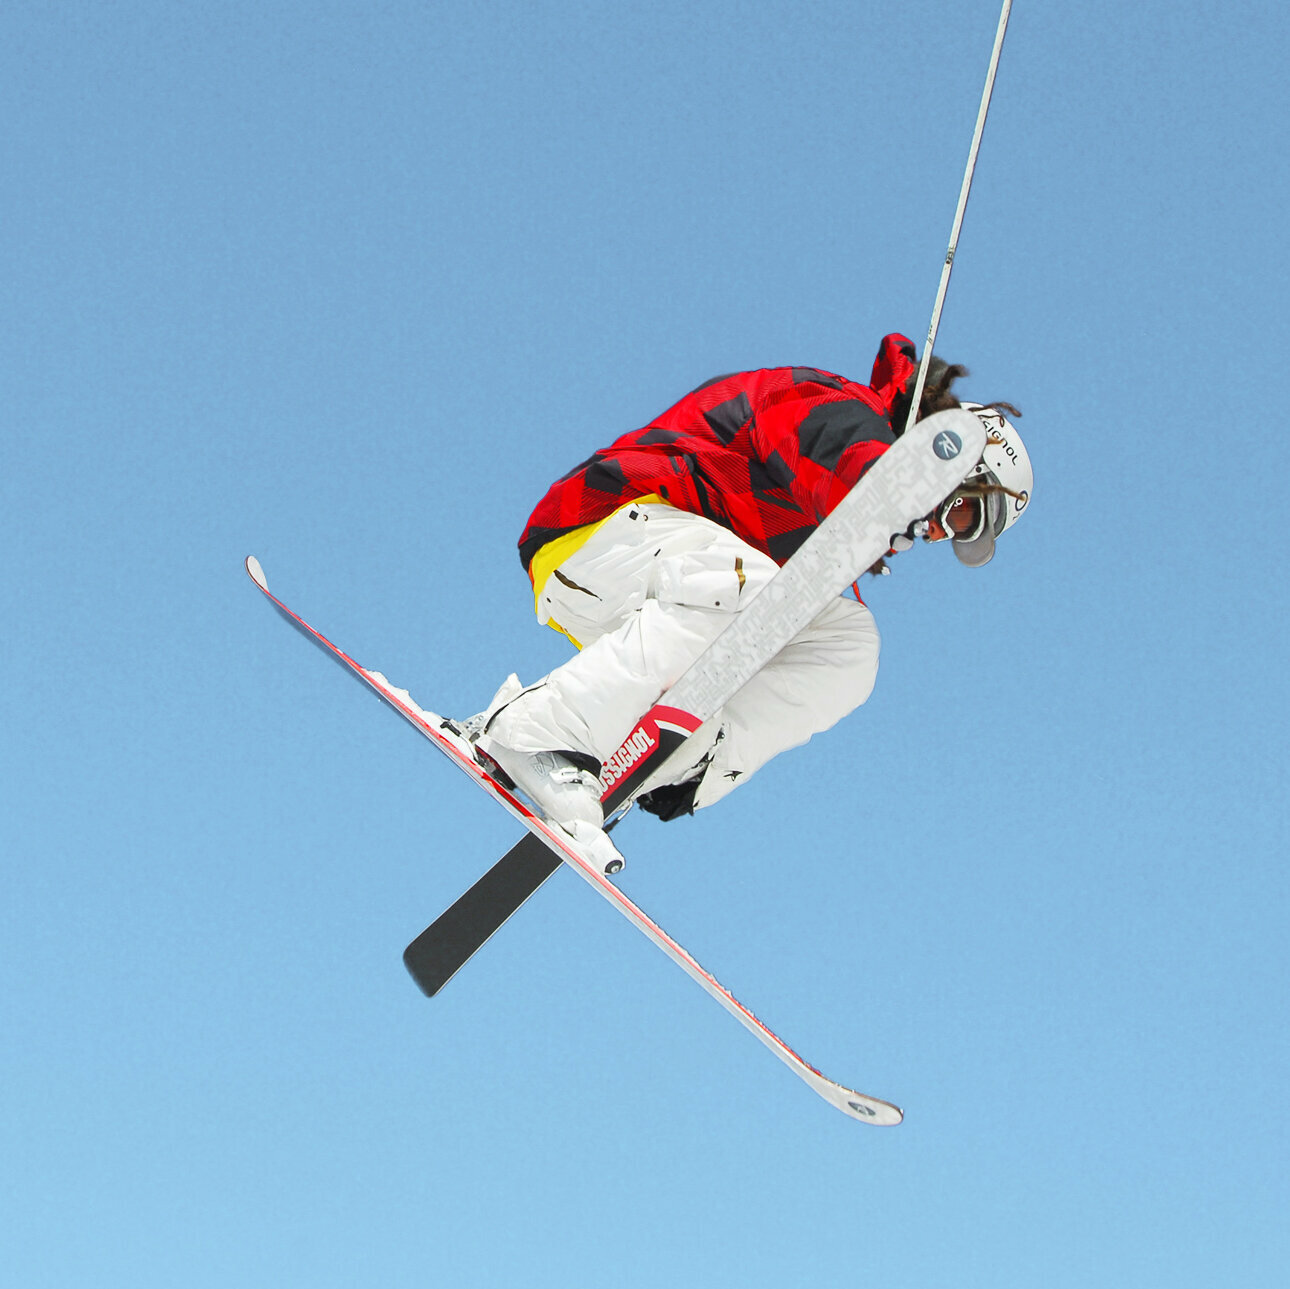 Skifahrer macht Kunststück in der Luft